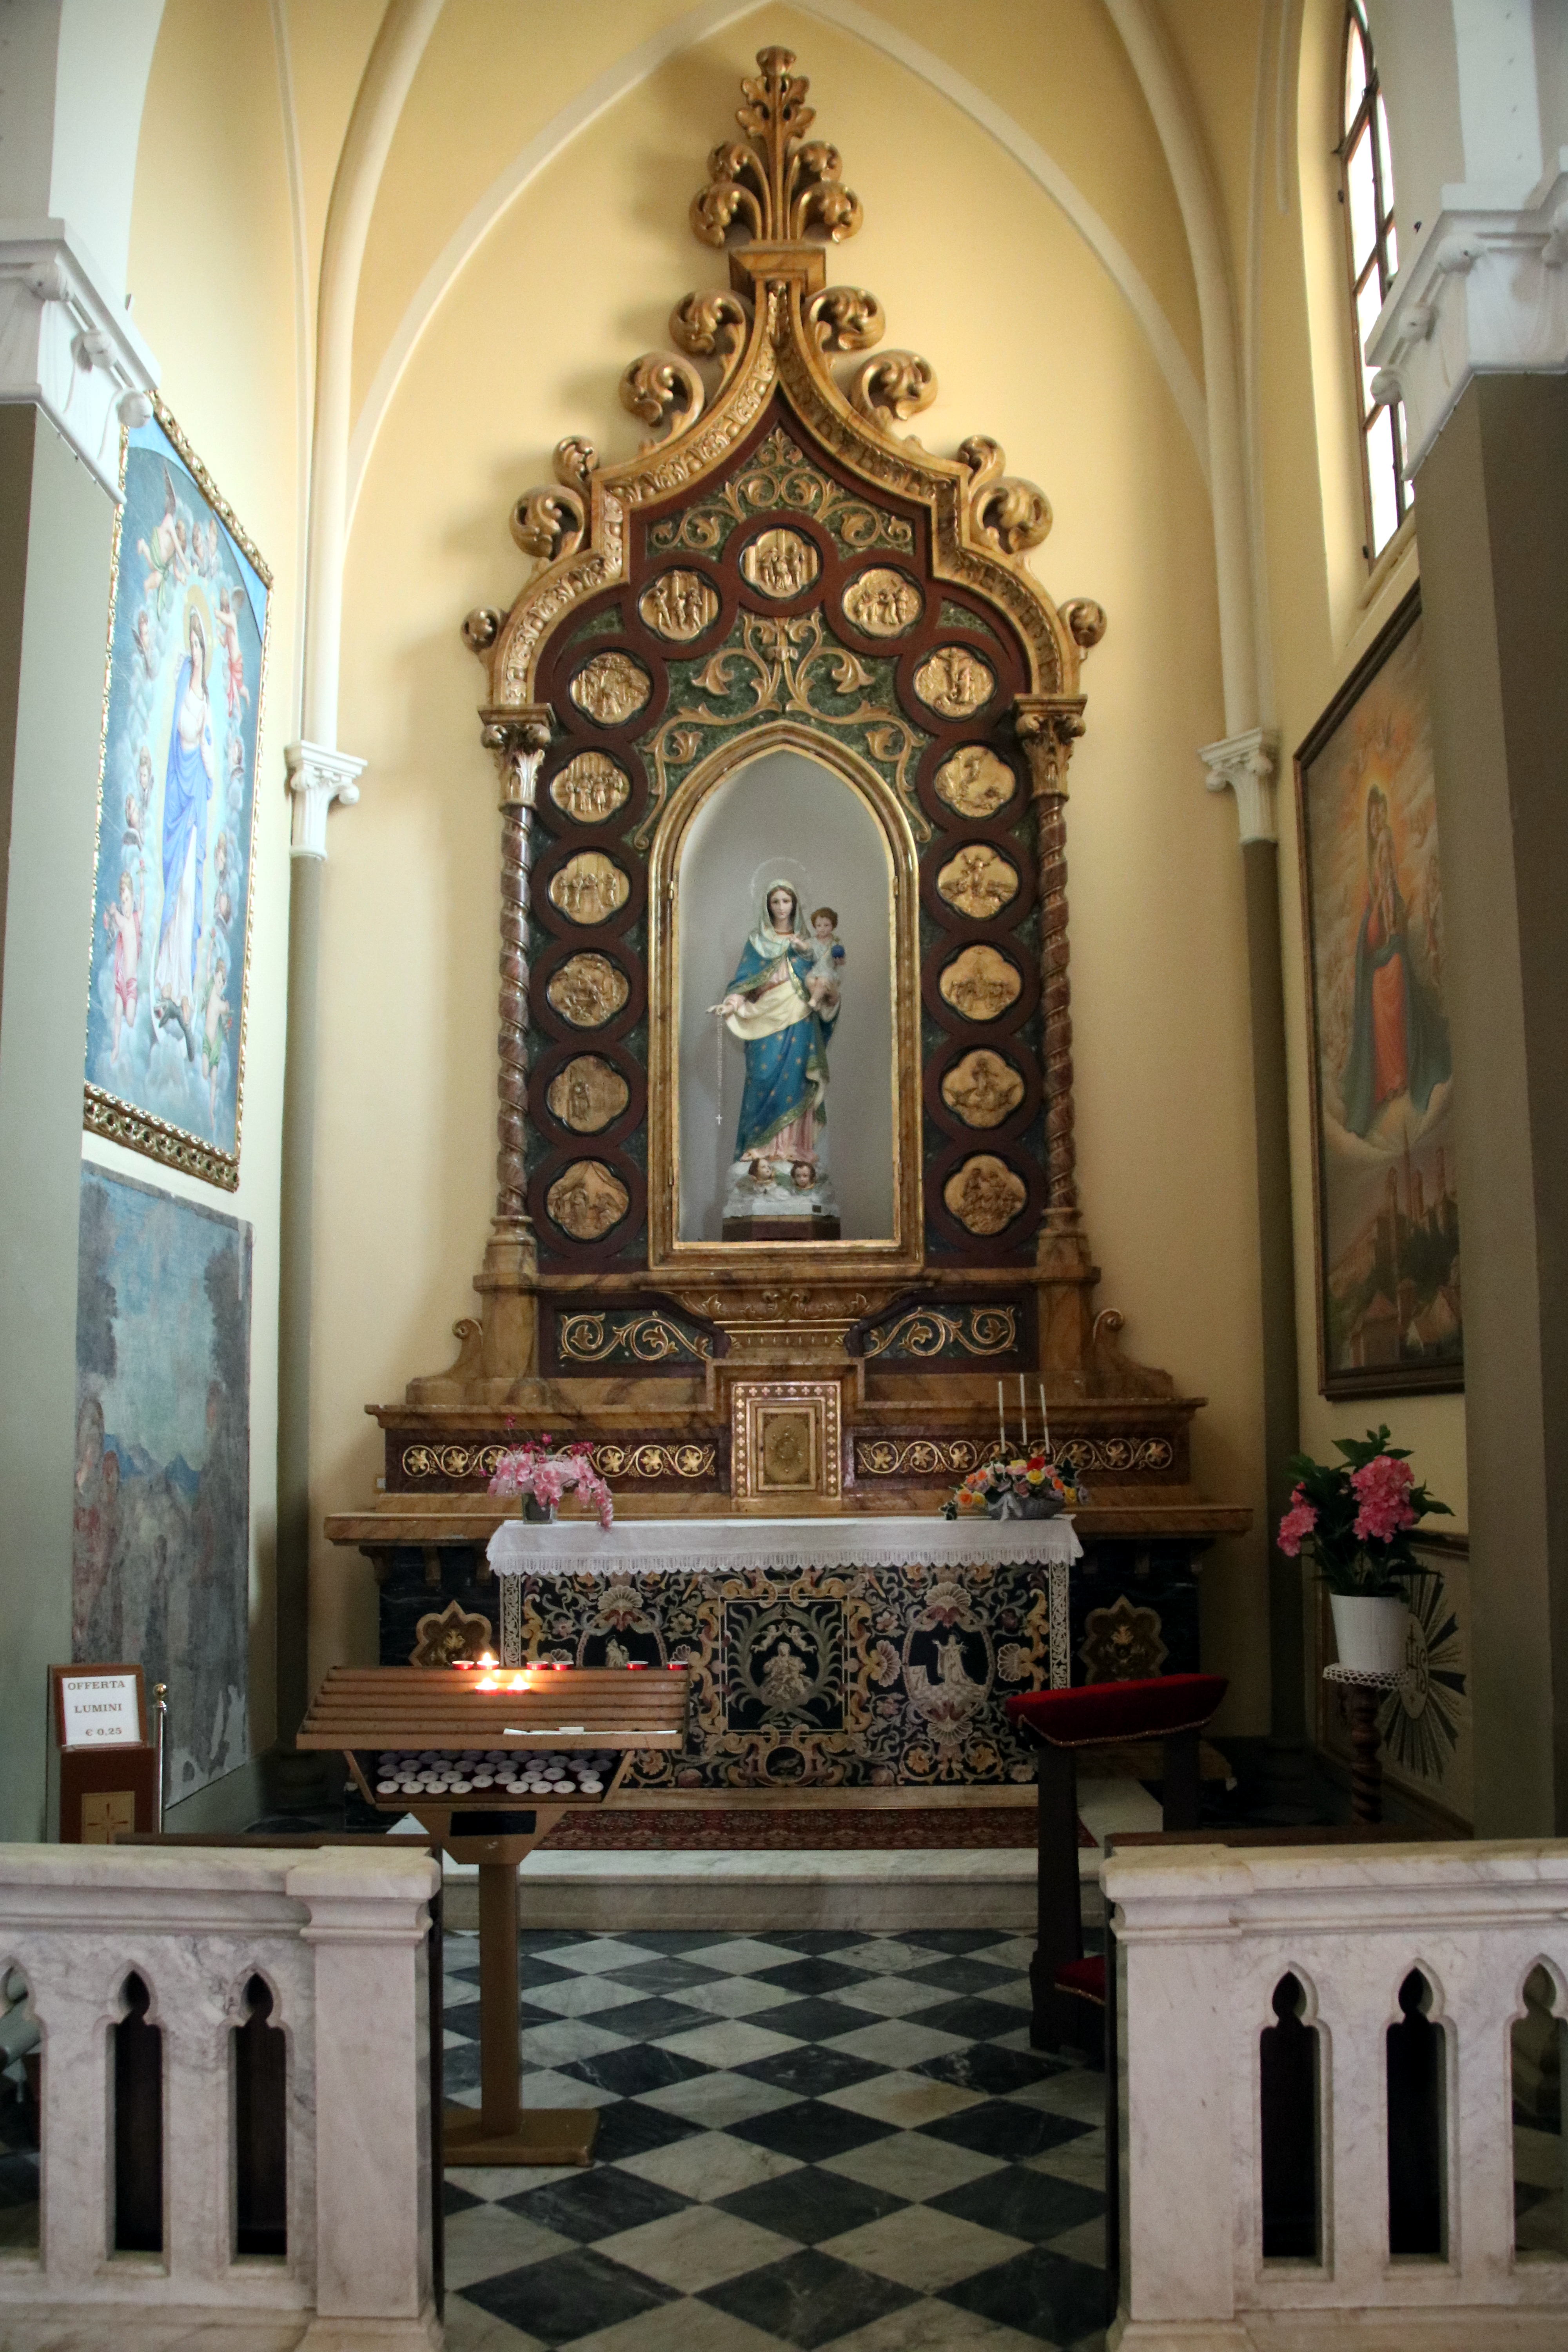 foto: https://upload.wikimedia.org/wikipedia/commons/d/df/Chiesa_dei_Santi_Senesio_e_Teopompo_%28Castelvetro_di_Modena%29%2C_cappella_01.jpg